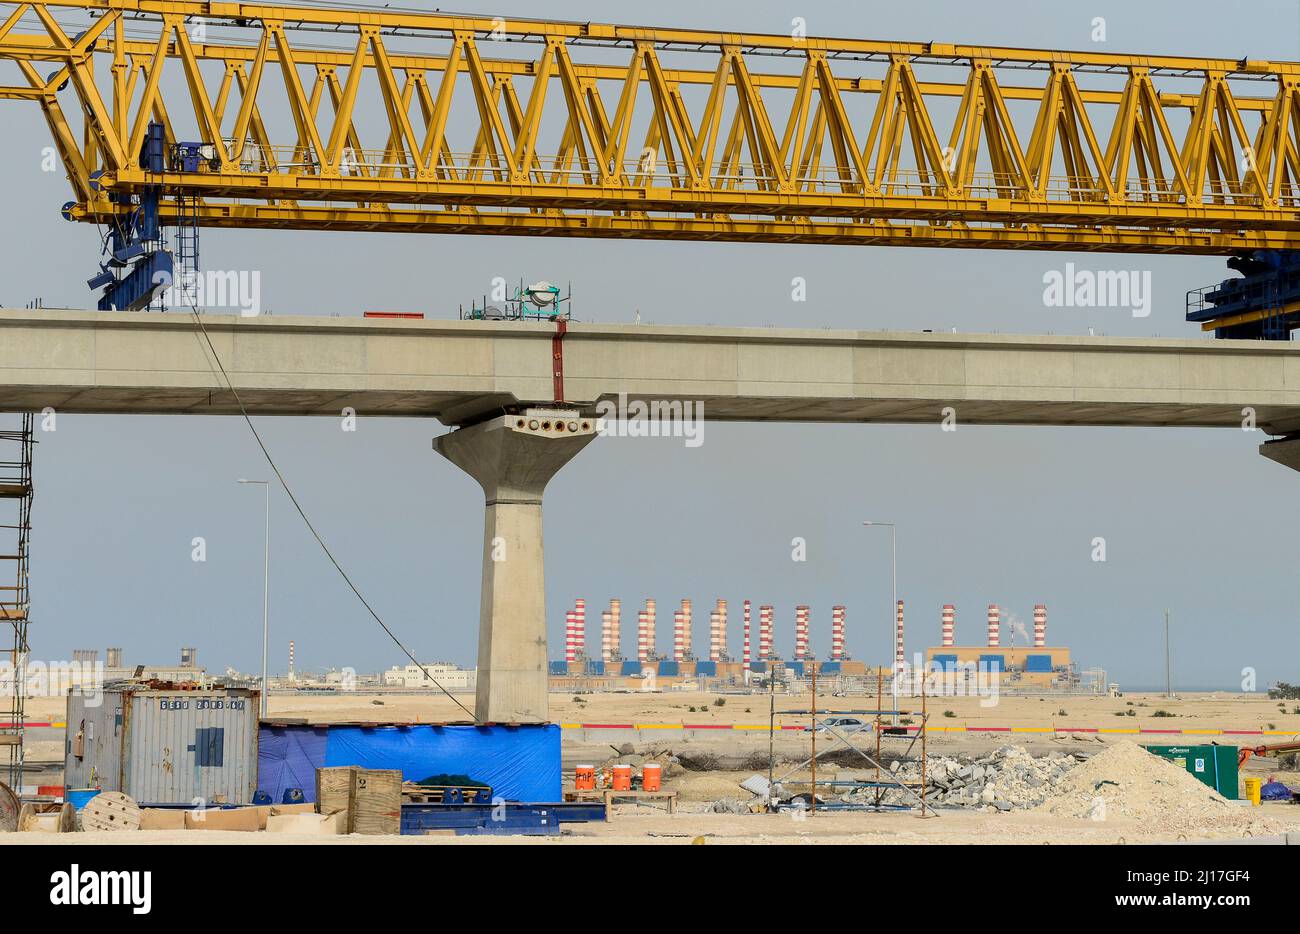 QATAR, Doha, Qatar costruzione del ponte ferroviario cittadino e Ras Laffan C, una centrale elettrica per acqua e gas (IWPP) con una capacità a ciclo combinato di 2.730 MW di elettricità e 63 milioni di galloni imperiali di acqua desalinata al giorno (286,4 milioni di litri al giorno). Il progetto può fornire circa il 30 per cento dell’elettricità del Qatar e il 20 per cento della sua domanda di acqua potabile al giorno. Il Qatar è uno dei maggiori produttori ed esportatori di gas GNL / KATAR, Doha, al Wakra, Bau einer neuen S-Bahn, Hintergrund Ras Laffan C IWPP Gaskraftwerk und Meerwasserentsalzungsanlage, das Emirat Katar ist einer der Foto Stock